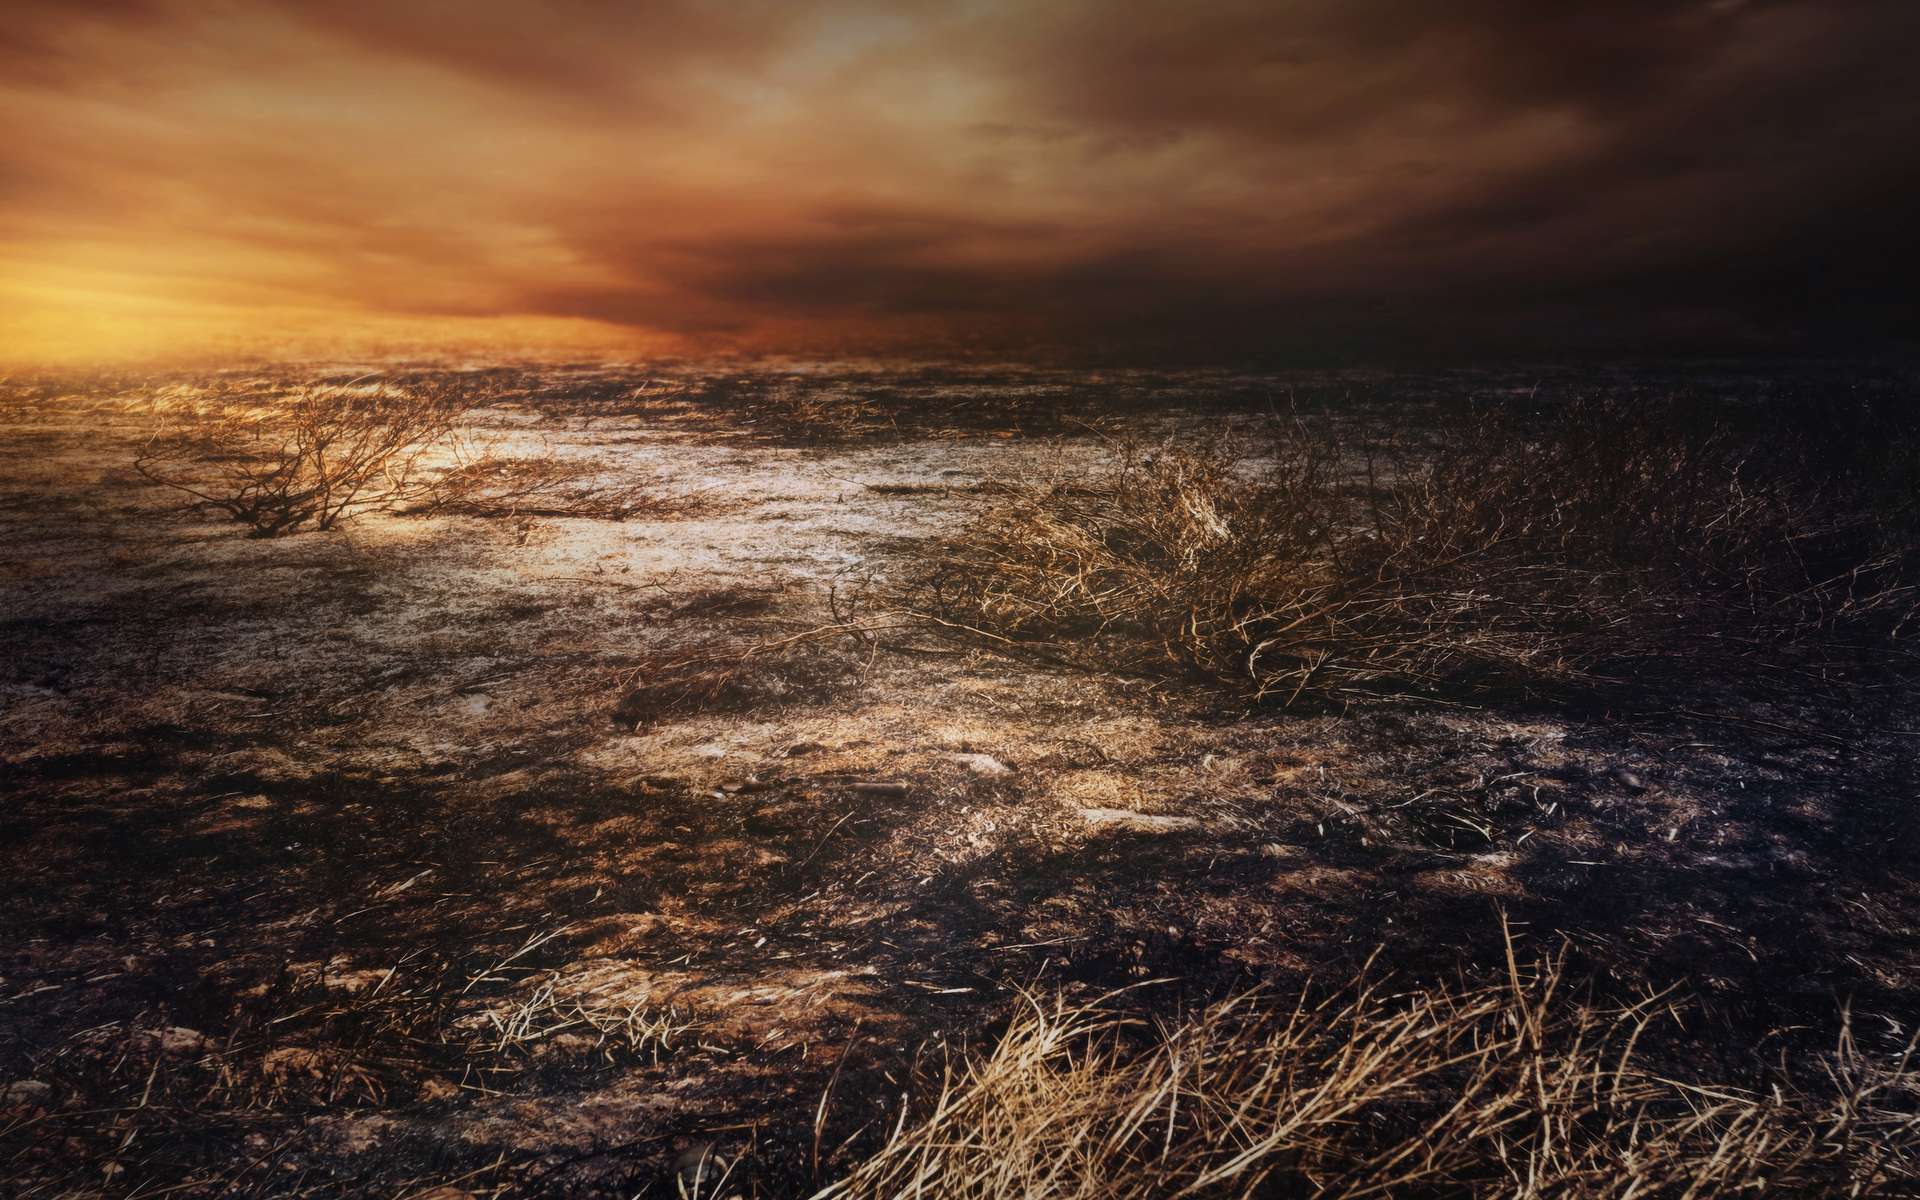 La multiplication des feux de forêt met la planète — et surtout, ceux qui y vivent — en danger. Tout comme la pollution sonore et les perturbations dans les cycles de vie provoquées par le réchauffement climatique. © chokchaipoo, Adobe Stock